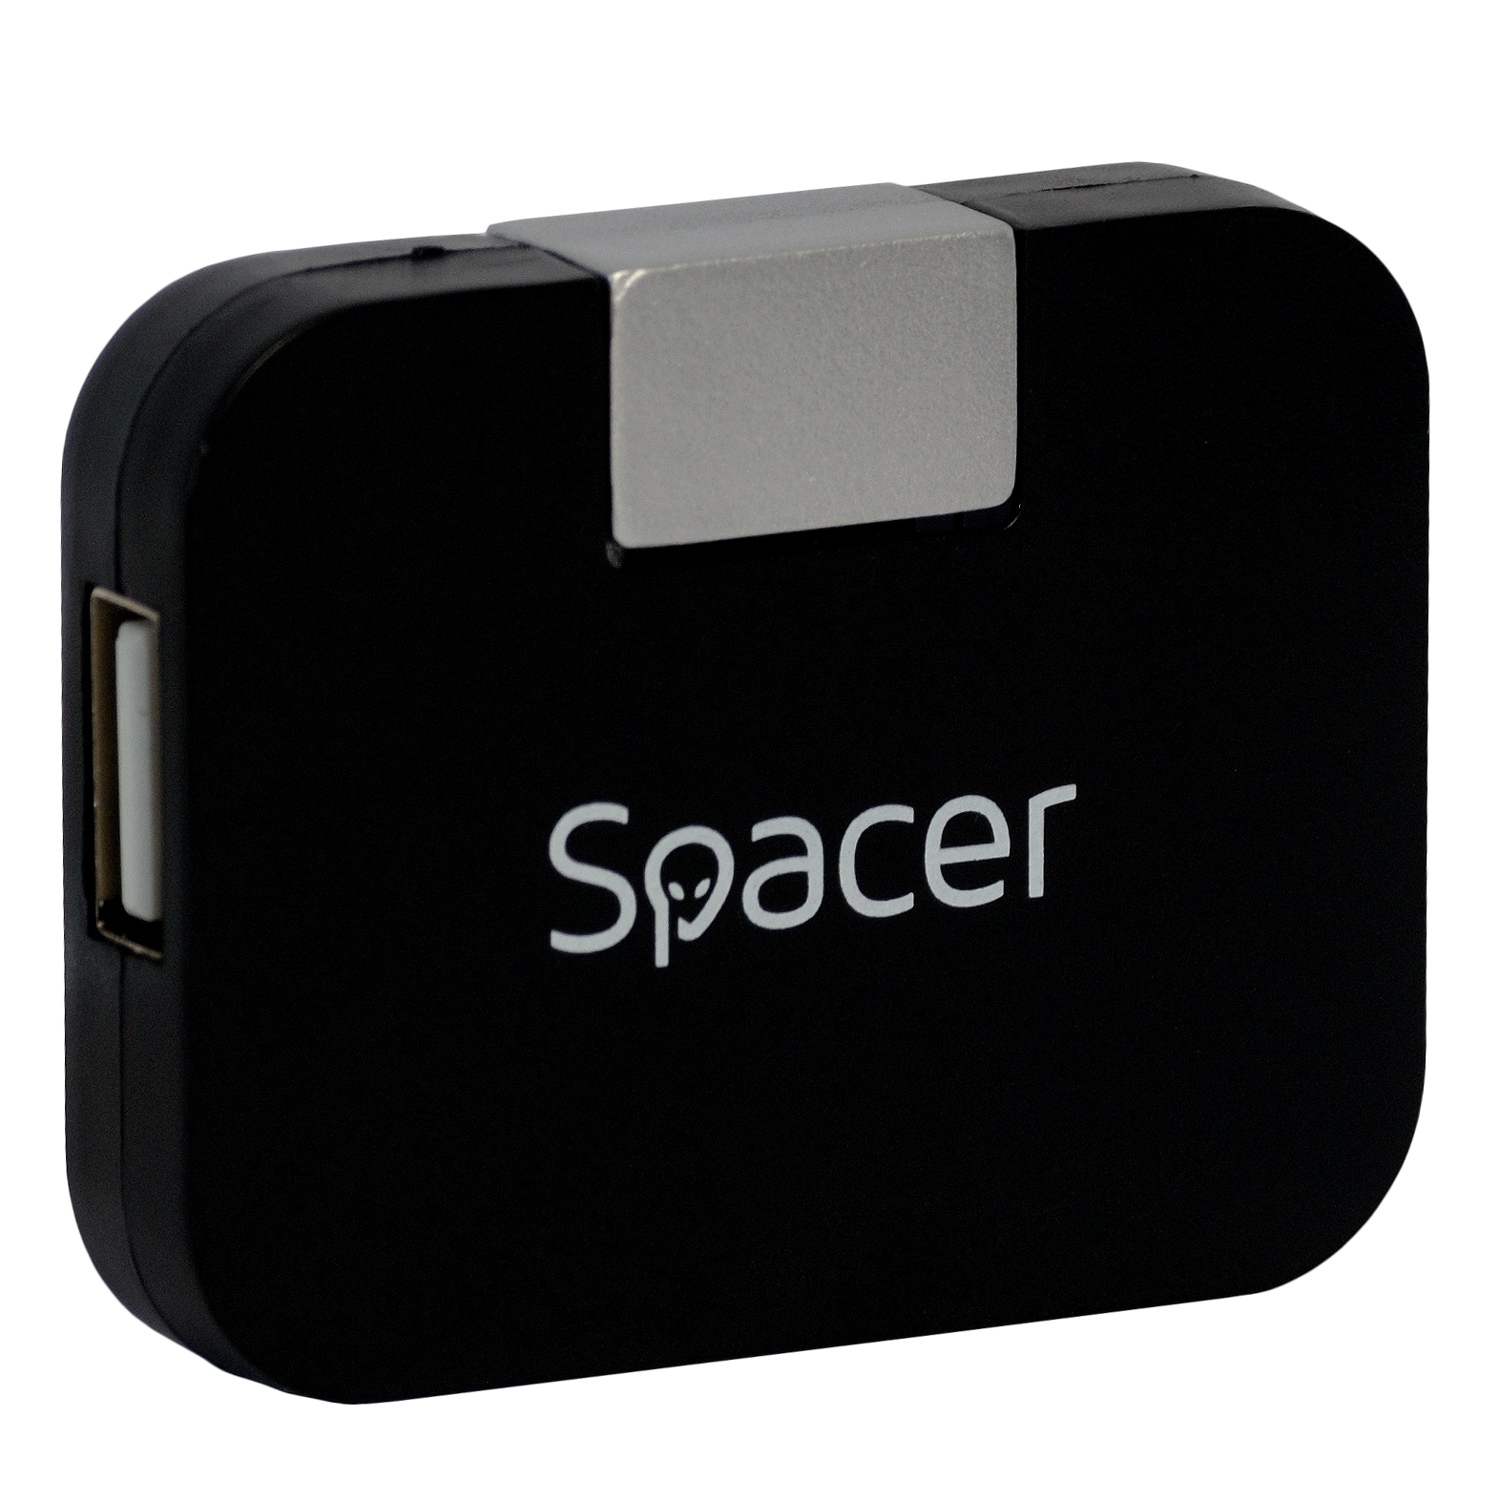 HUB extern SPACER, porturi USB: USB 2.0 x 4, conectare prin USB 2.0, cablu 1m, negru, „SPH-316” (timbru verde 0.8 lei)